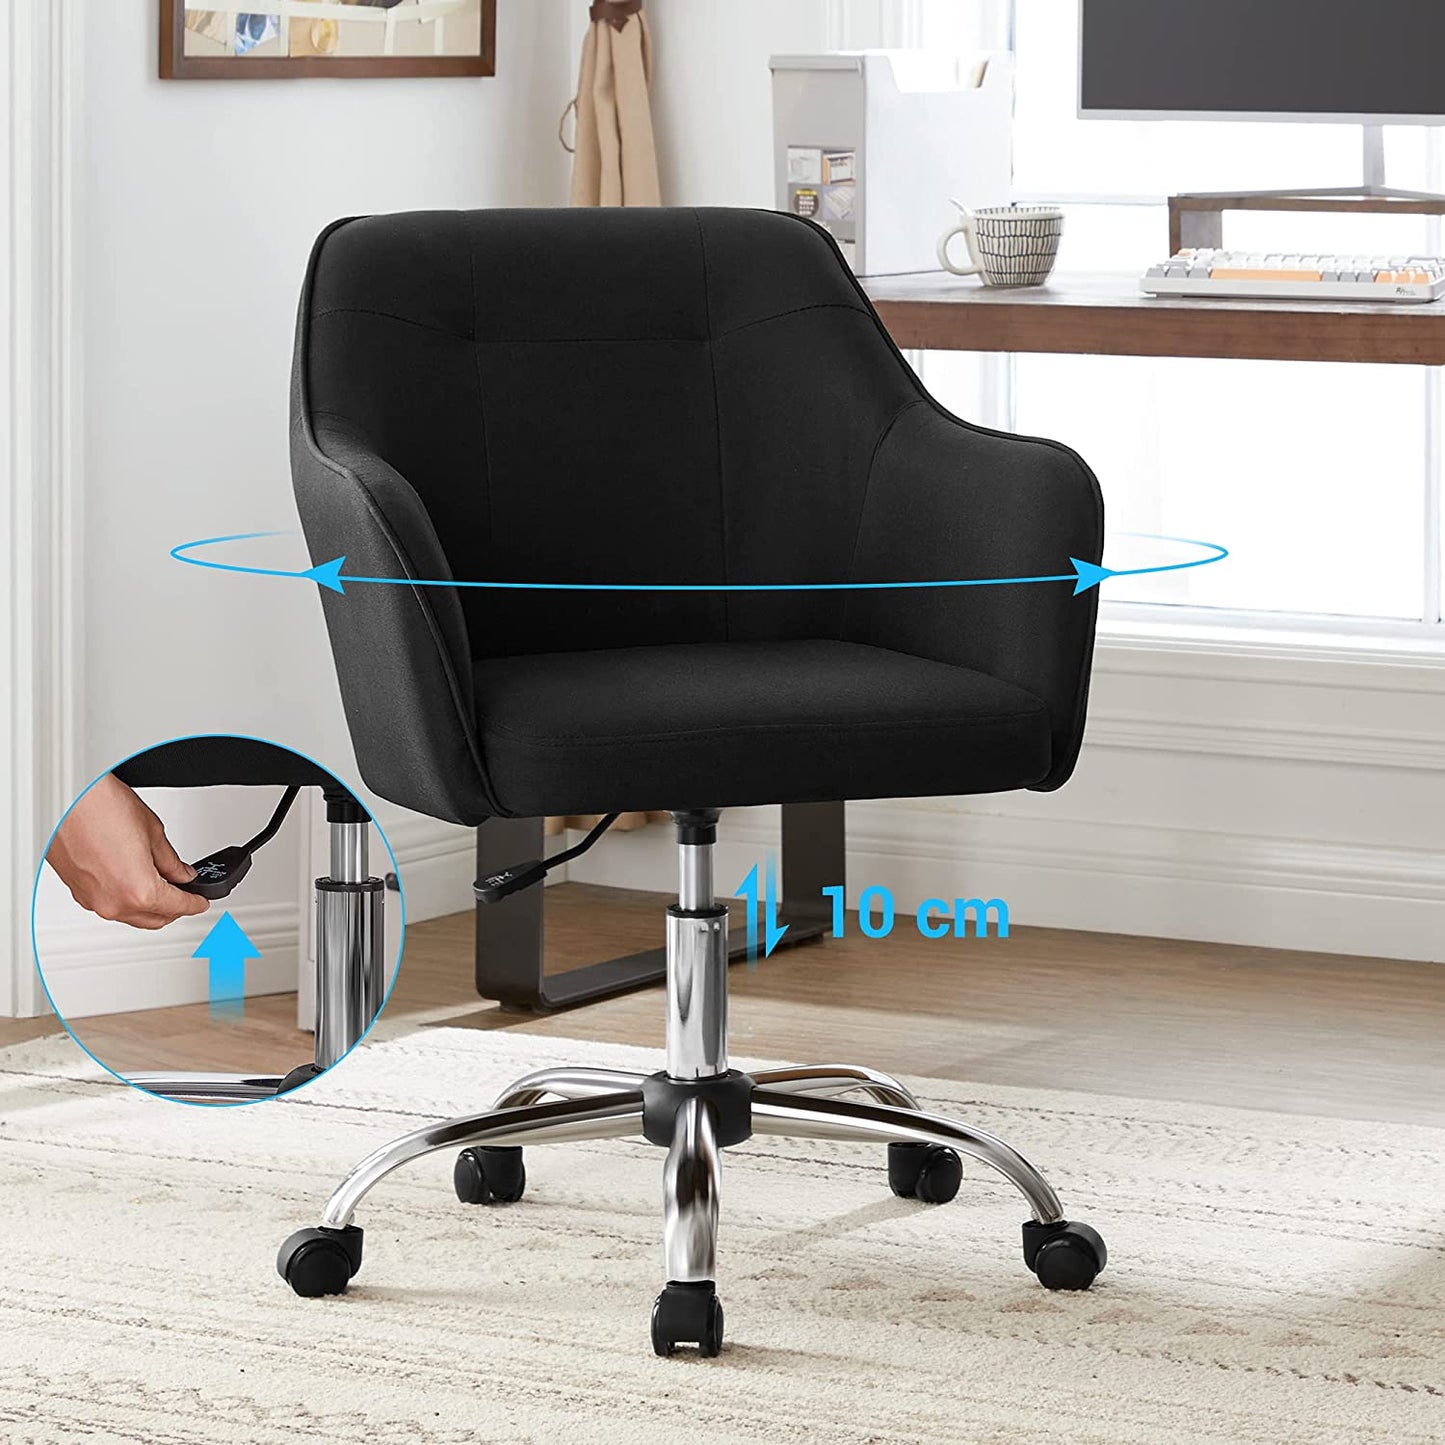 SONGMICS - Fauteuil de bureau, Chaise pivotante confortable, Siège ergonomique, réglable en hauteur, 10 cm